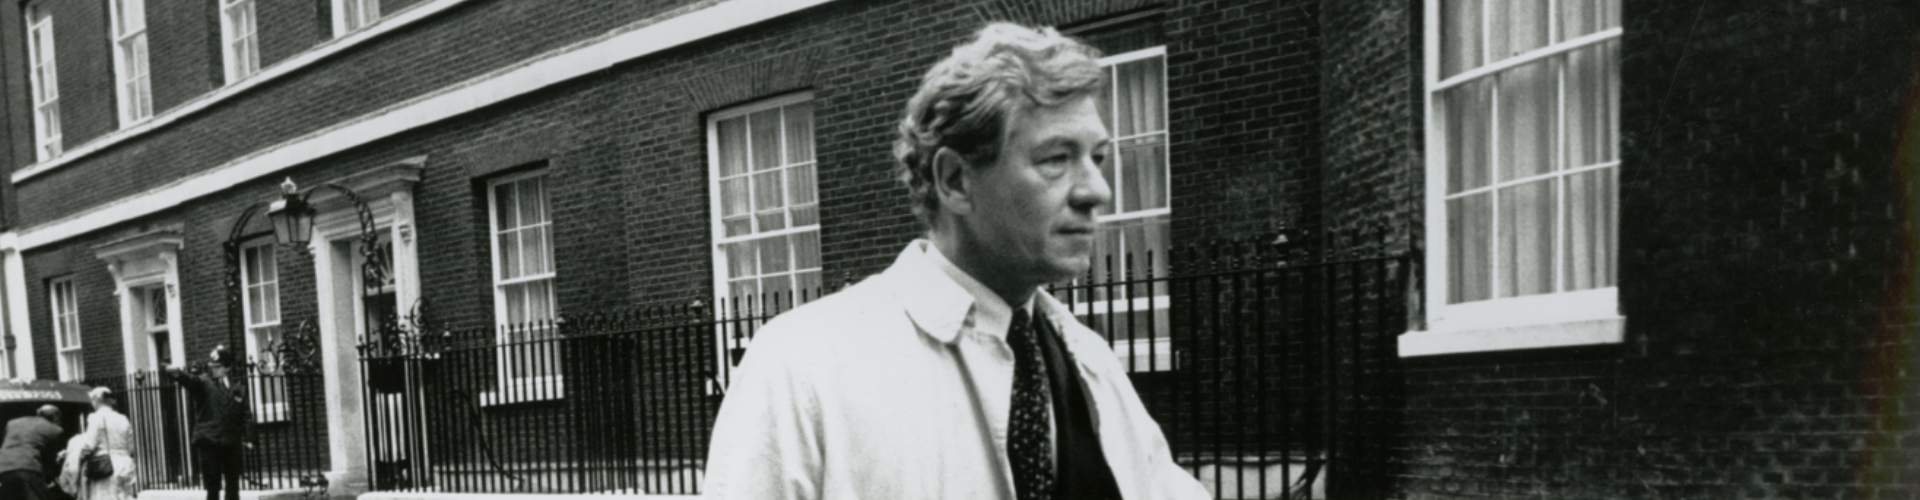 Ian McKellen outside 10 Downing Street